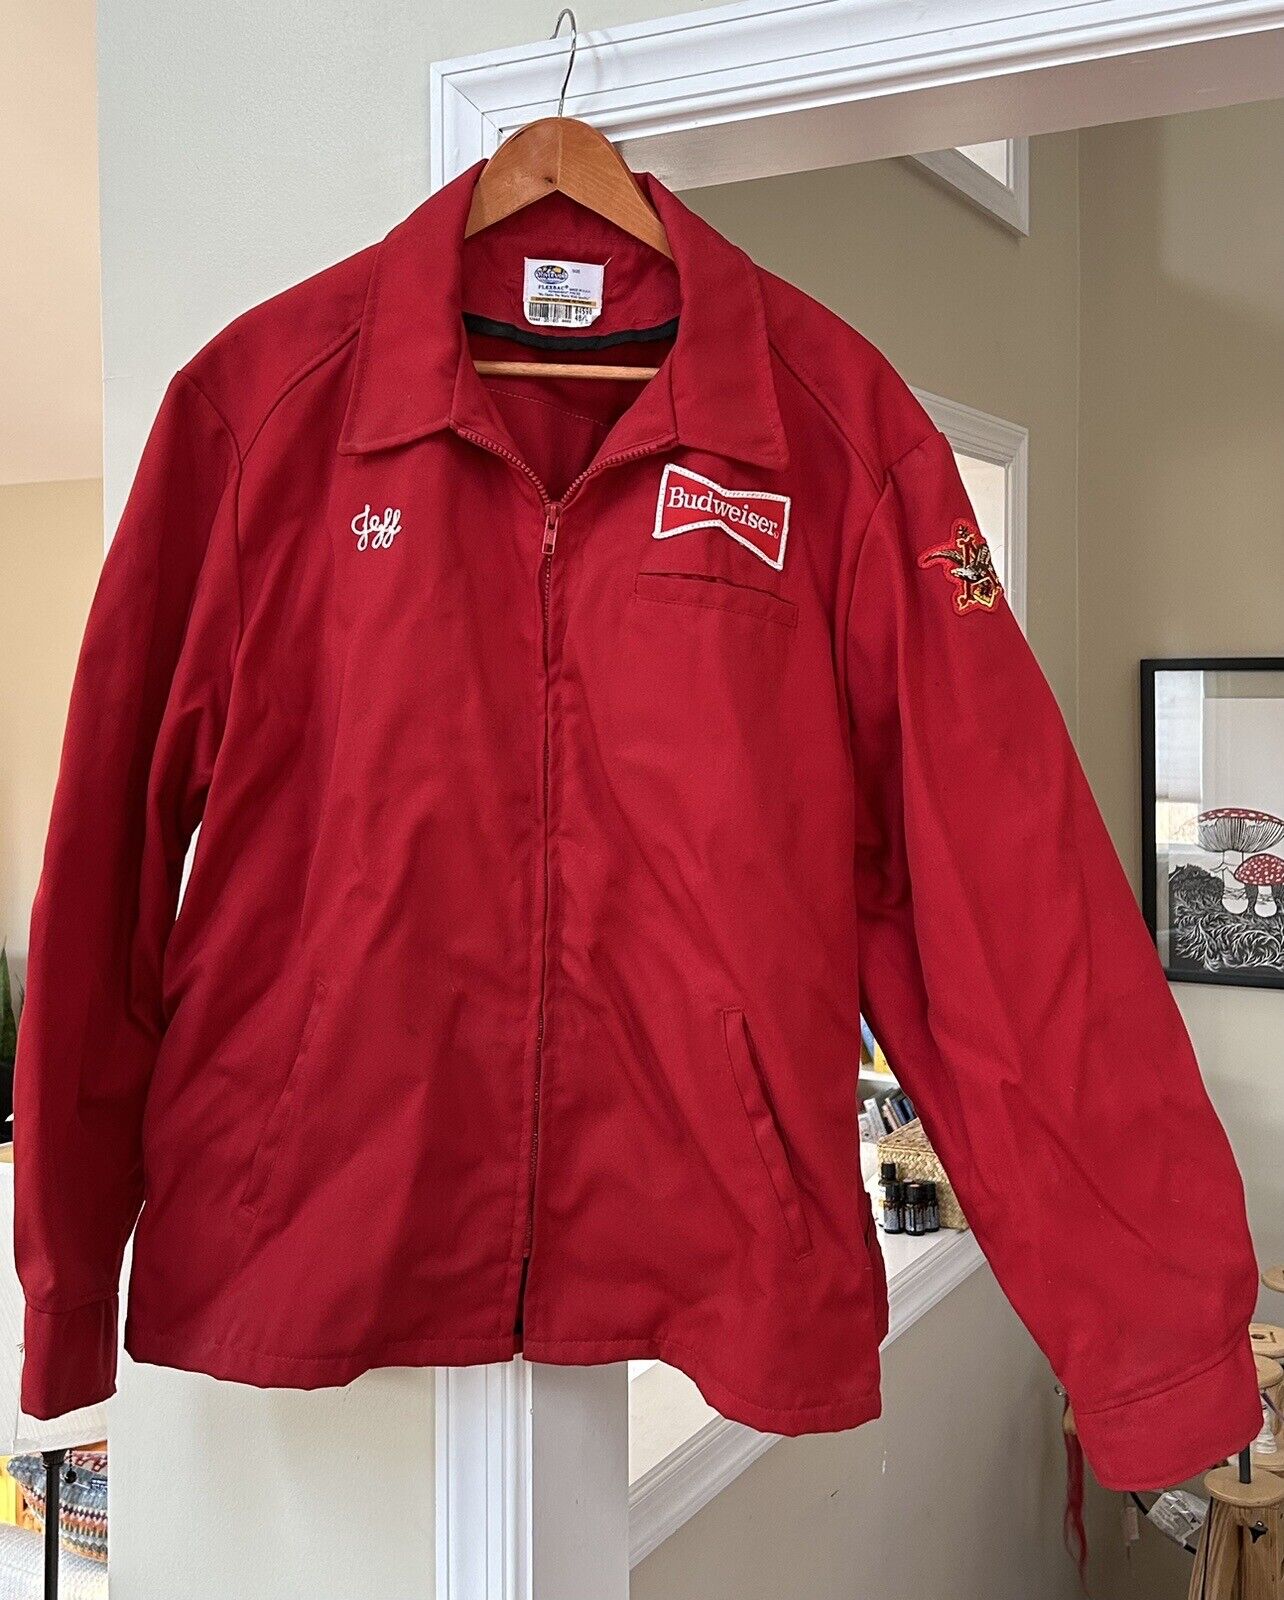 Vintage Anheuser Busch BUDWEISER Red Beer Delivery Man Jacket Coat Uniform LARGE